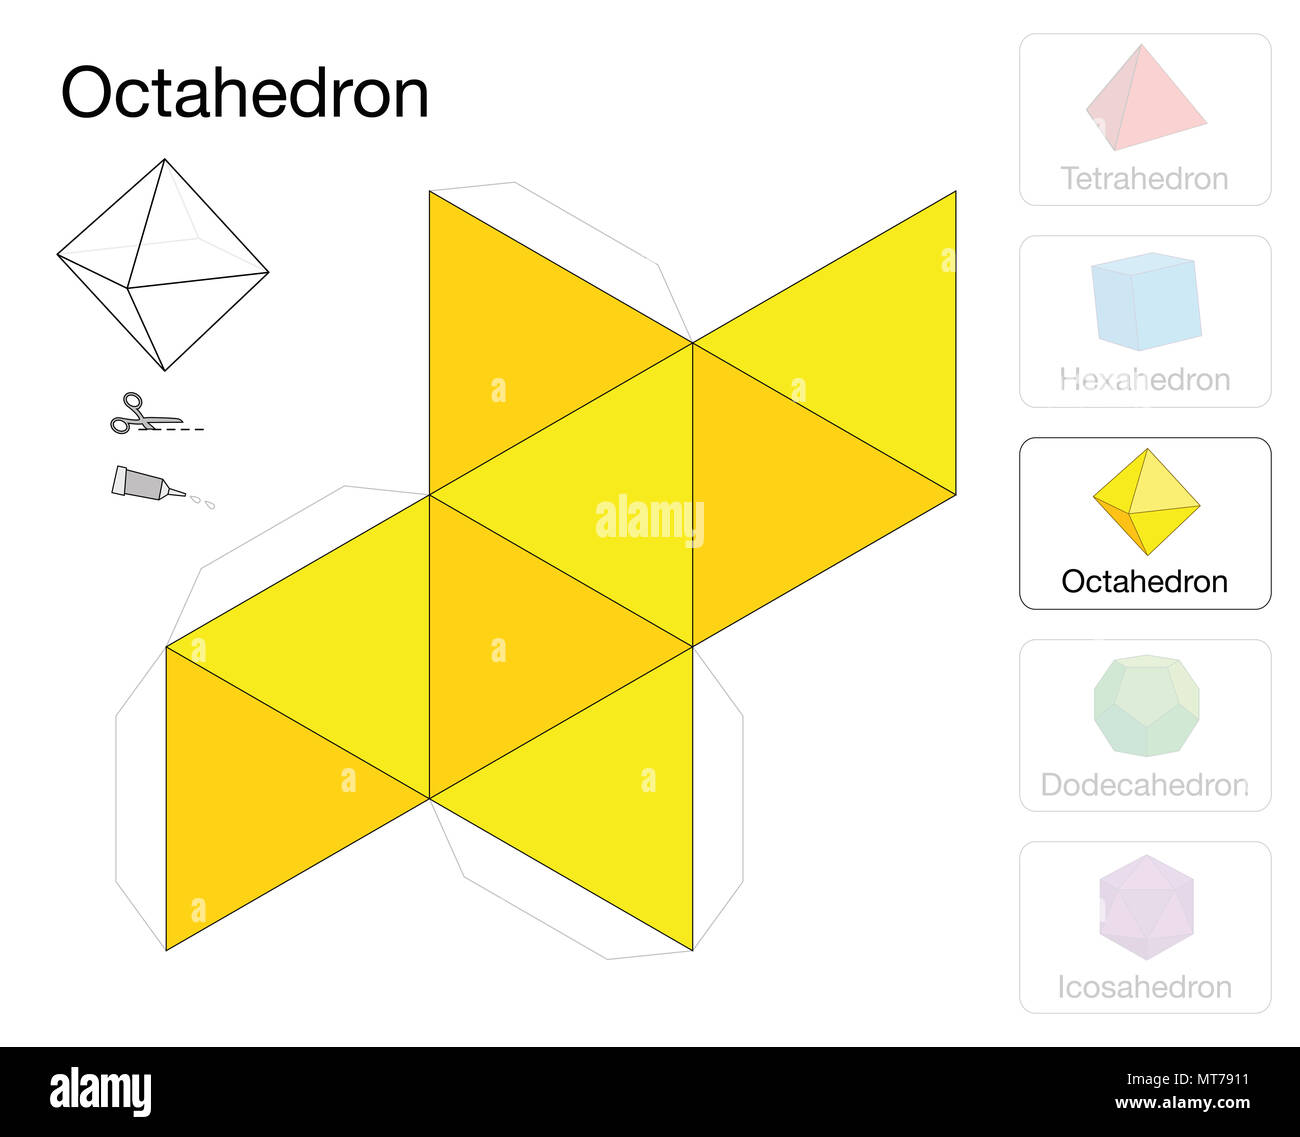 Solides platoniciens octaèdre modèle. Modèle de papier d'un octaèdre, un des cinq solides de Platon, de faire un travail d'artisanat à trois dimensions. Banque D'Images